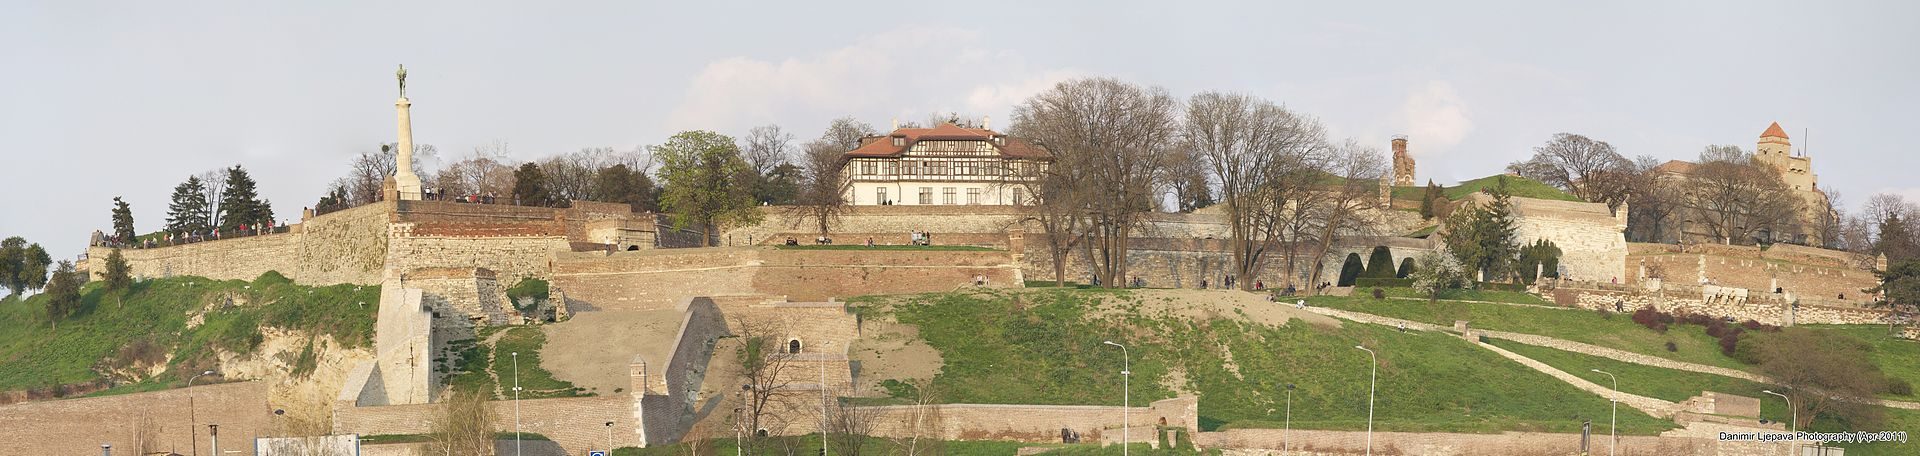 Belgrade ou forteresse de Kalemegdan, Belgrade, Serbie